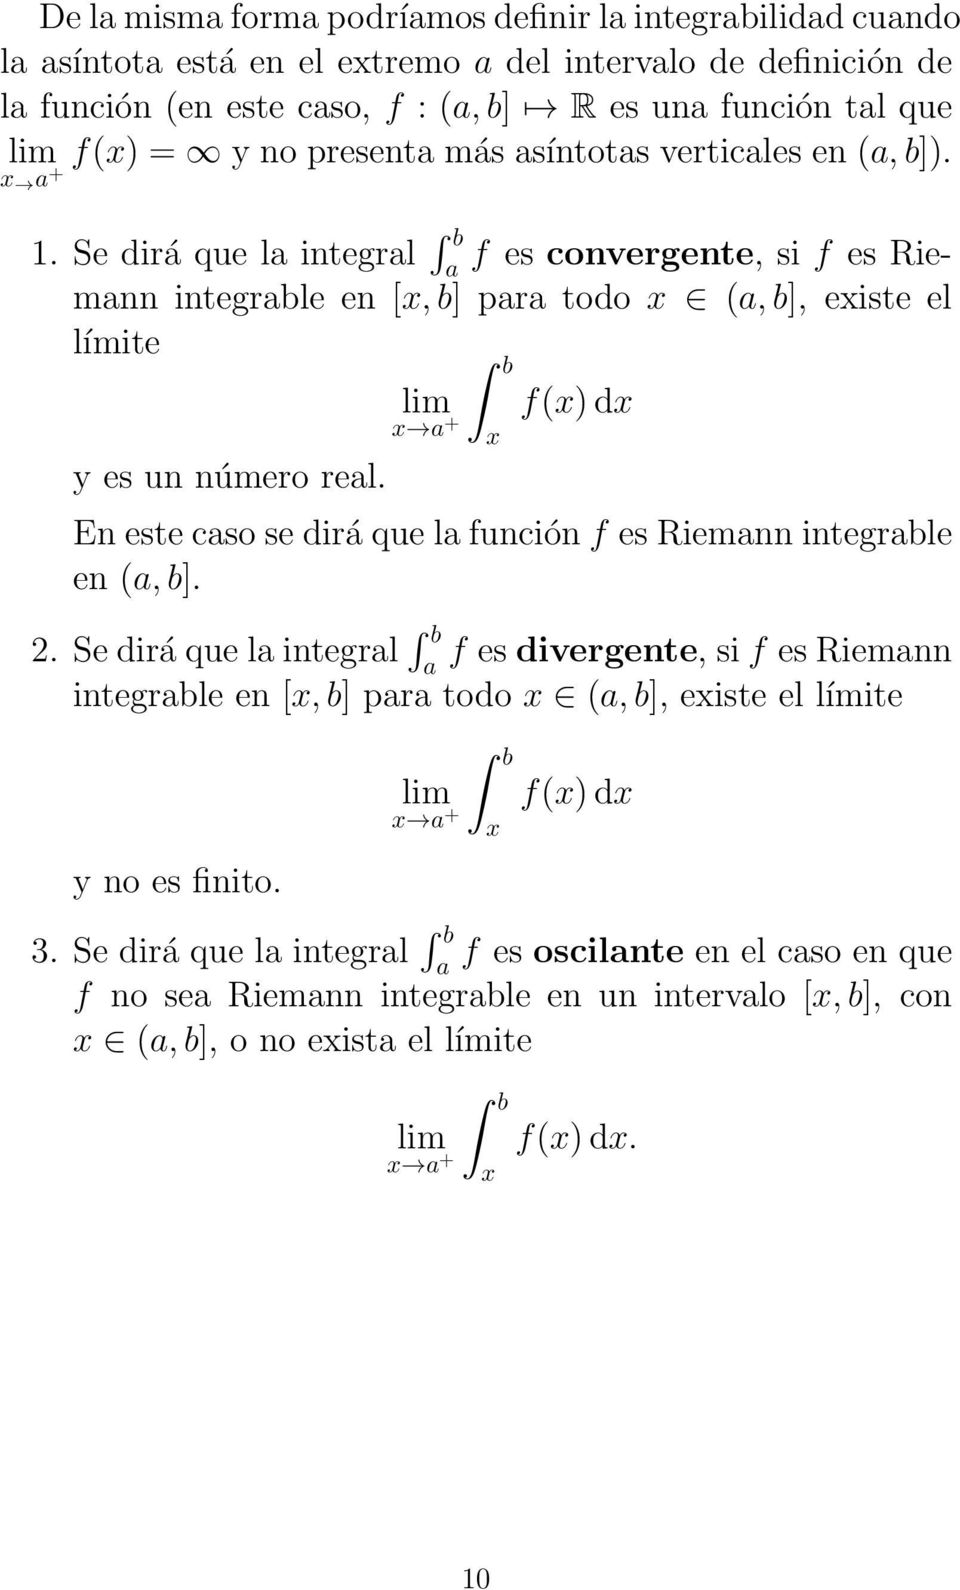 Se dirá que l integrl f es convergente, si f es Riemnn integrble en [x, b] pr todo x (, b], existe el límite f(x) dx x + x y es un número rel.